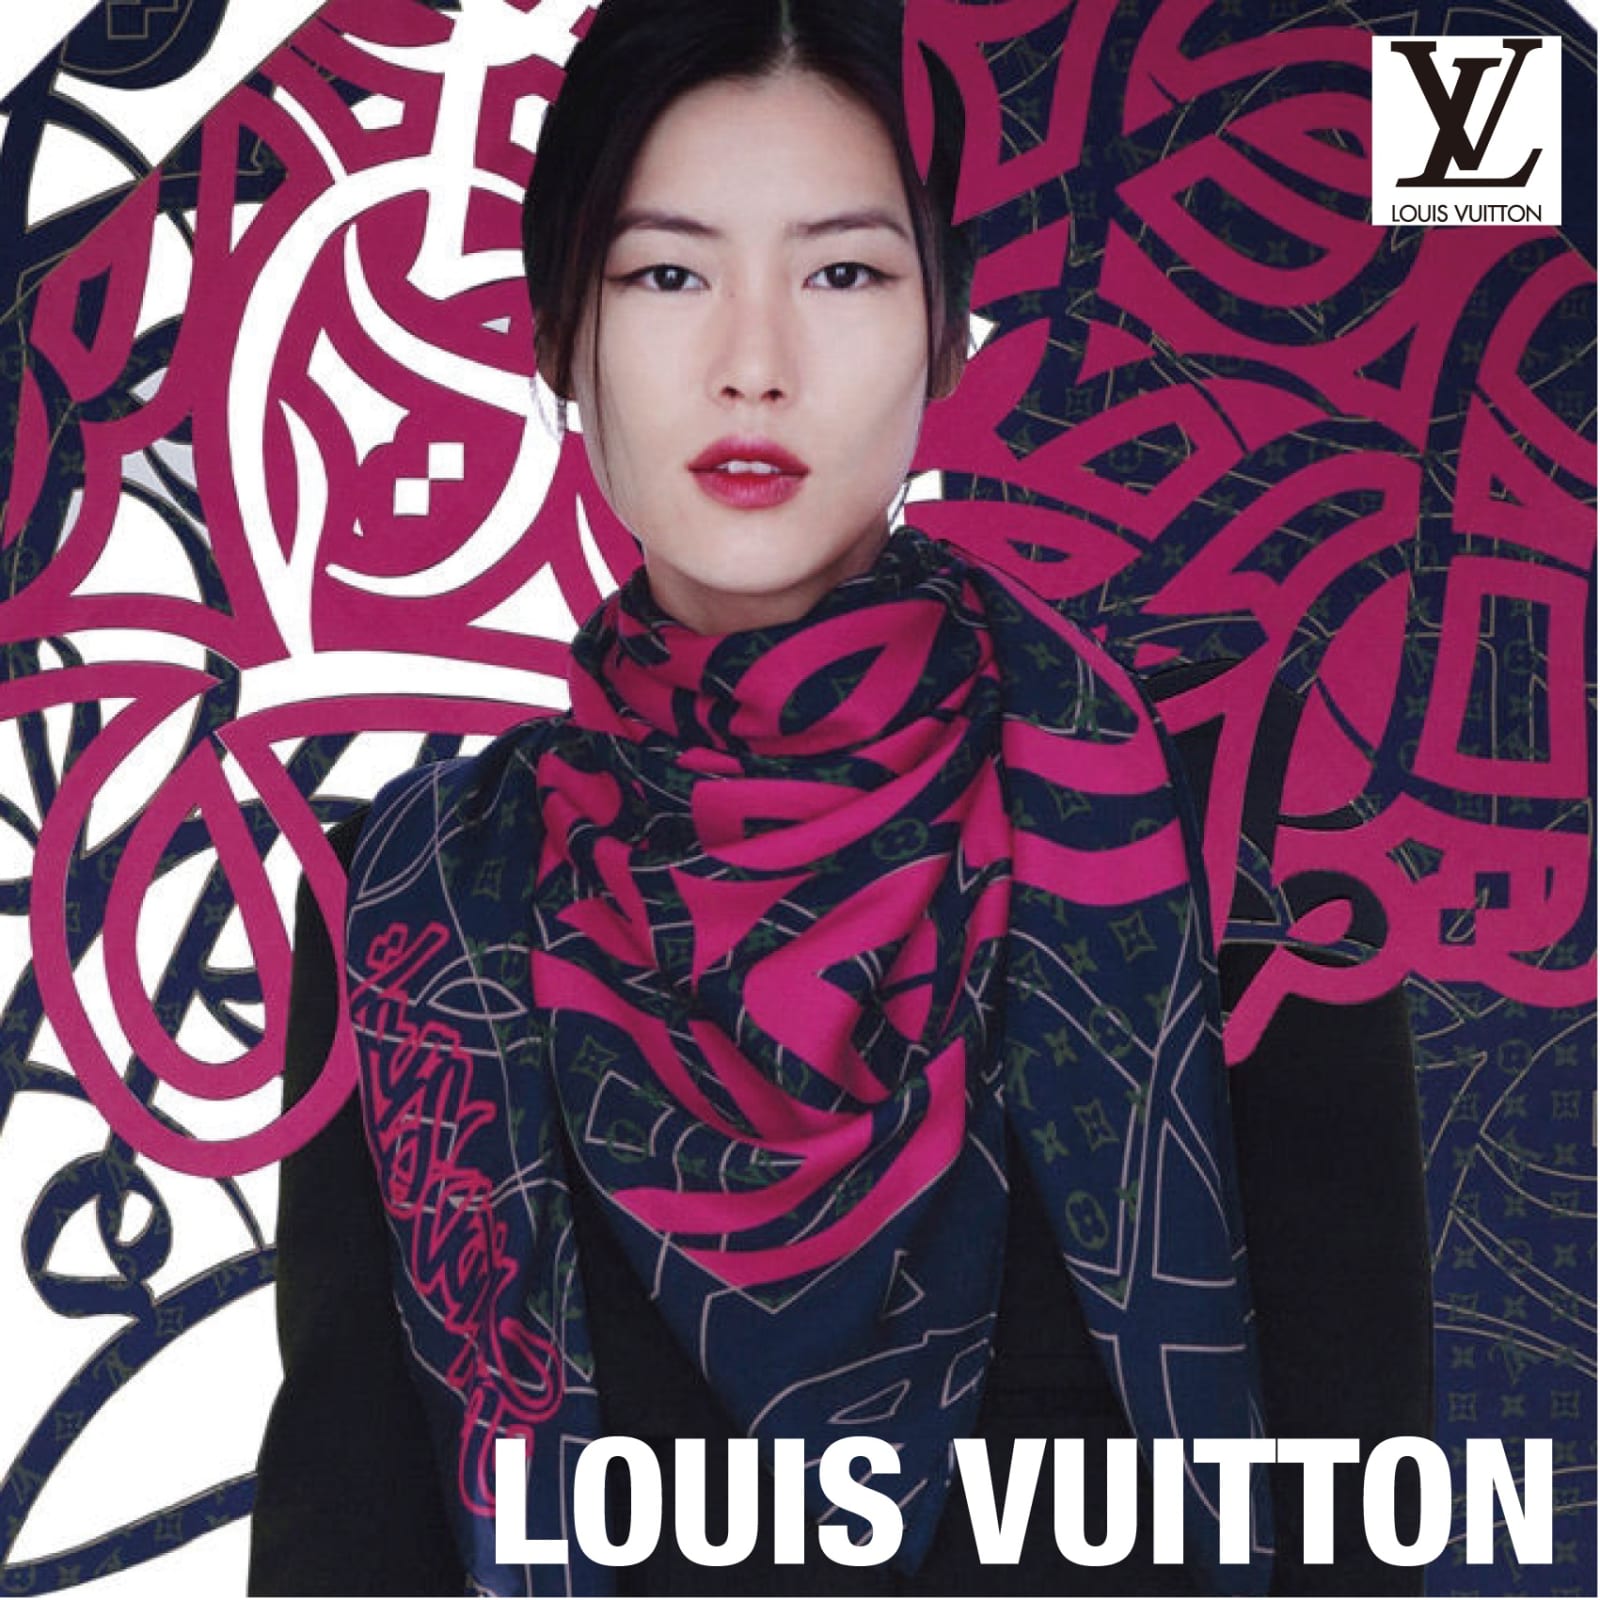 Louis Vuitton 2013